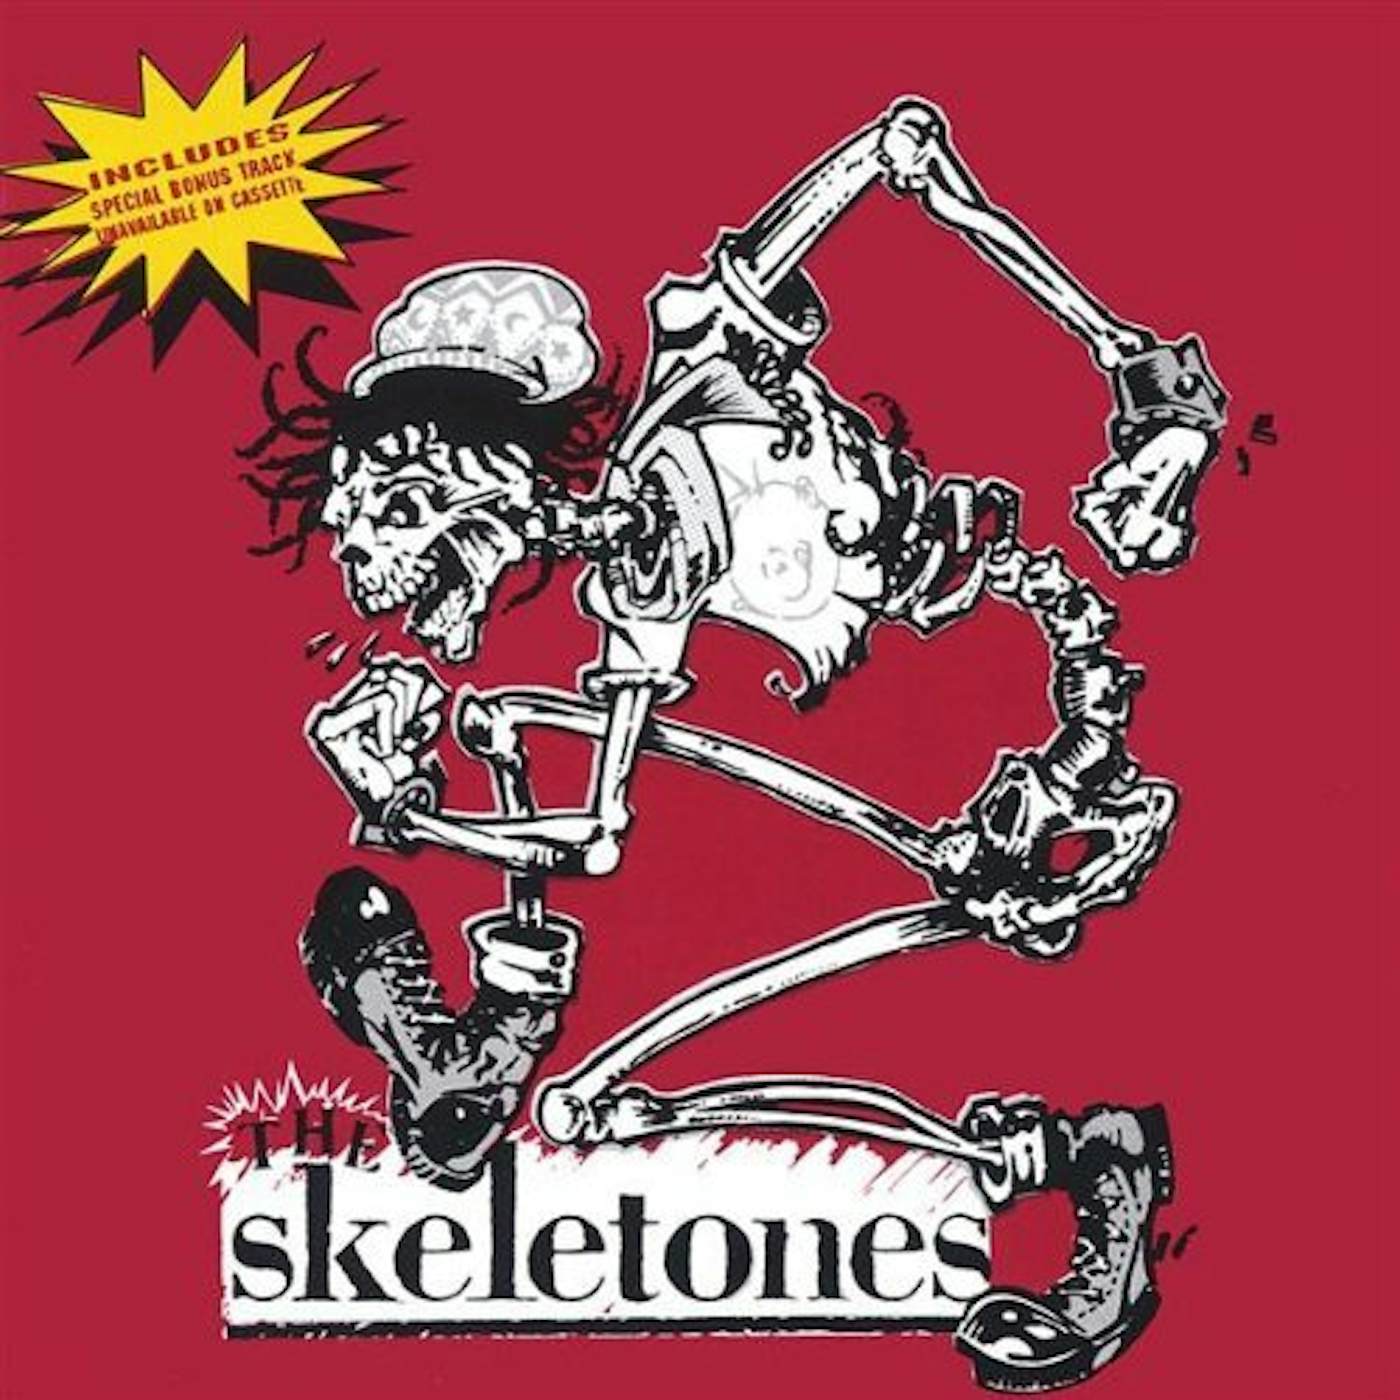 The Skeletones 2K SOULUTION CD